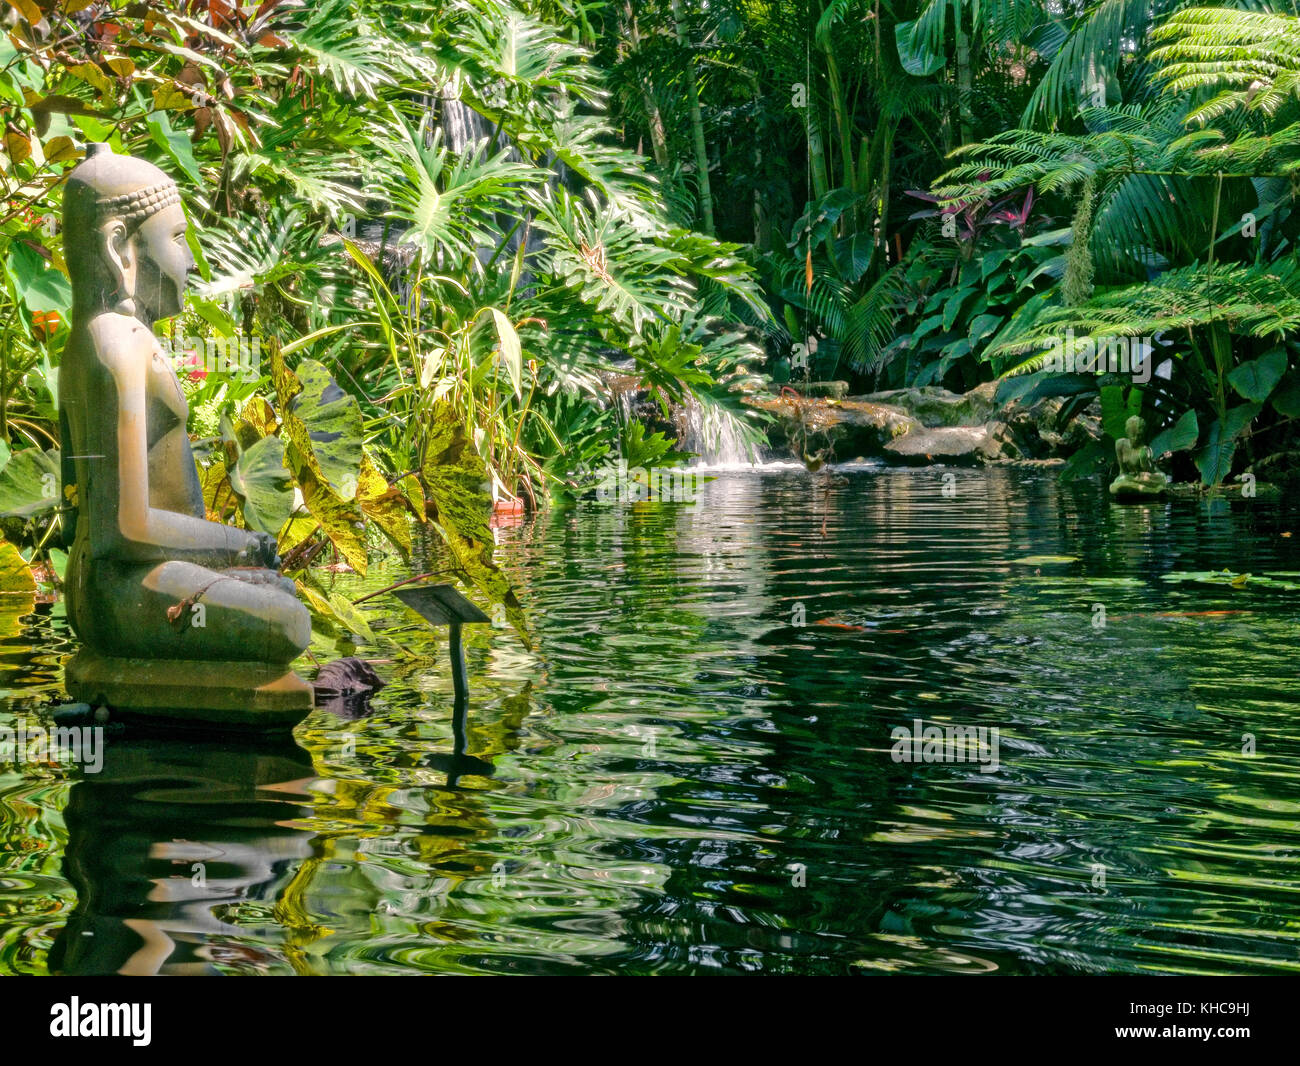 Escultura de bronce del Buda Gautama contemplando en meditación un estanque pequeño. Foto de stock